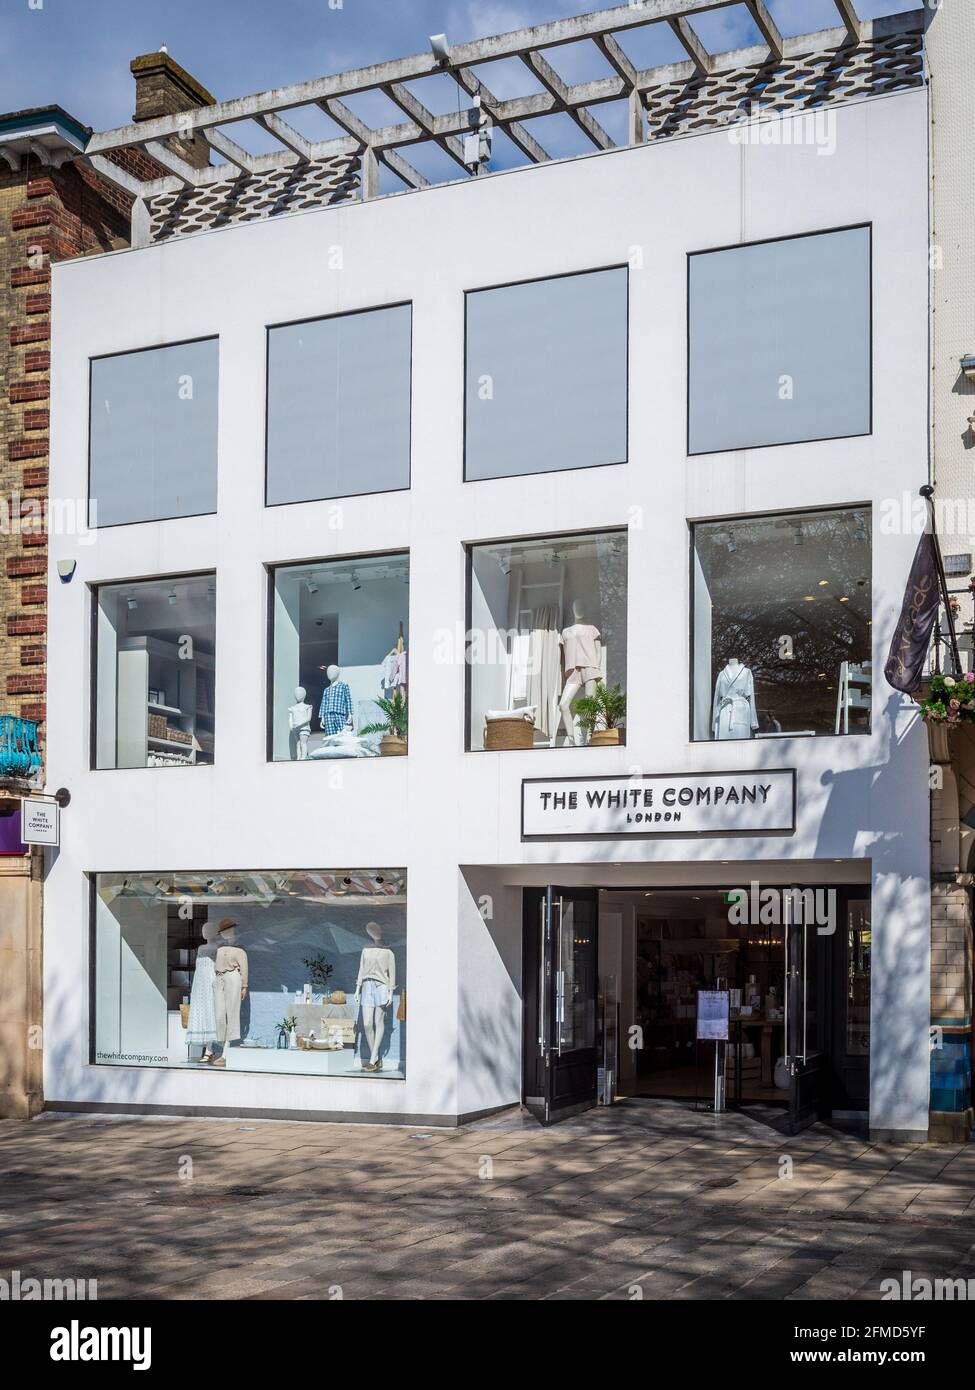 The White Company Store in Norwich UK - The White Company ist eine Kette von mehr als 50 exklusiven Lifestyle-Shops, die 1994 von Chrissie Rucker gegründet wurde. Stockfoto